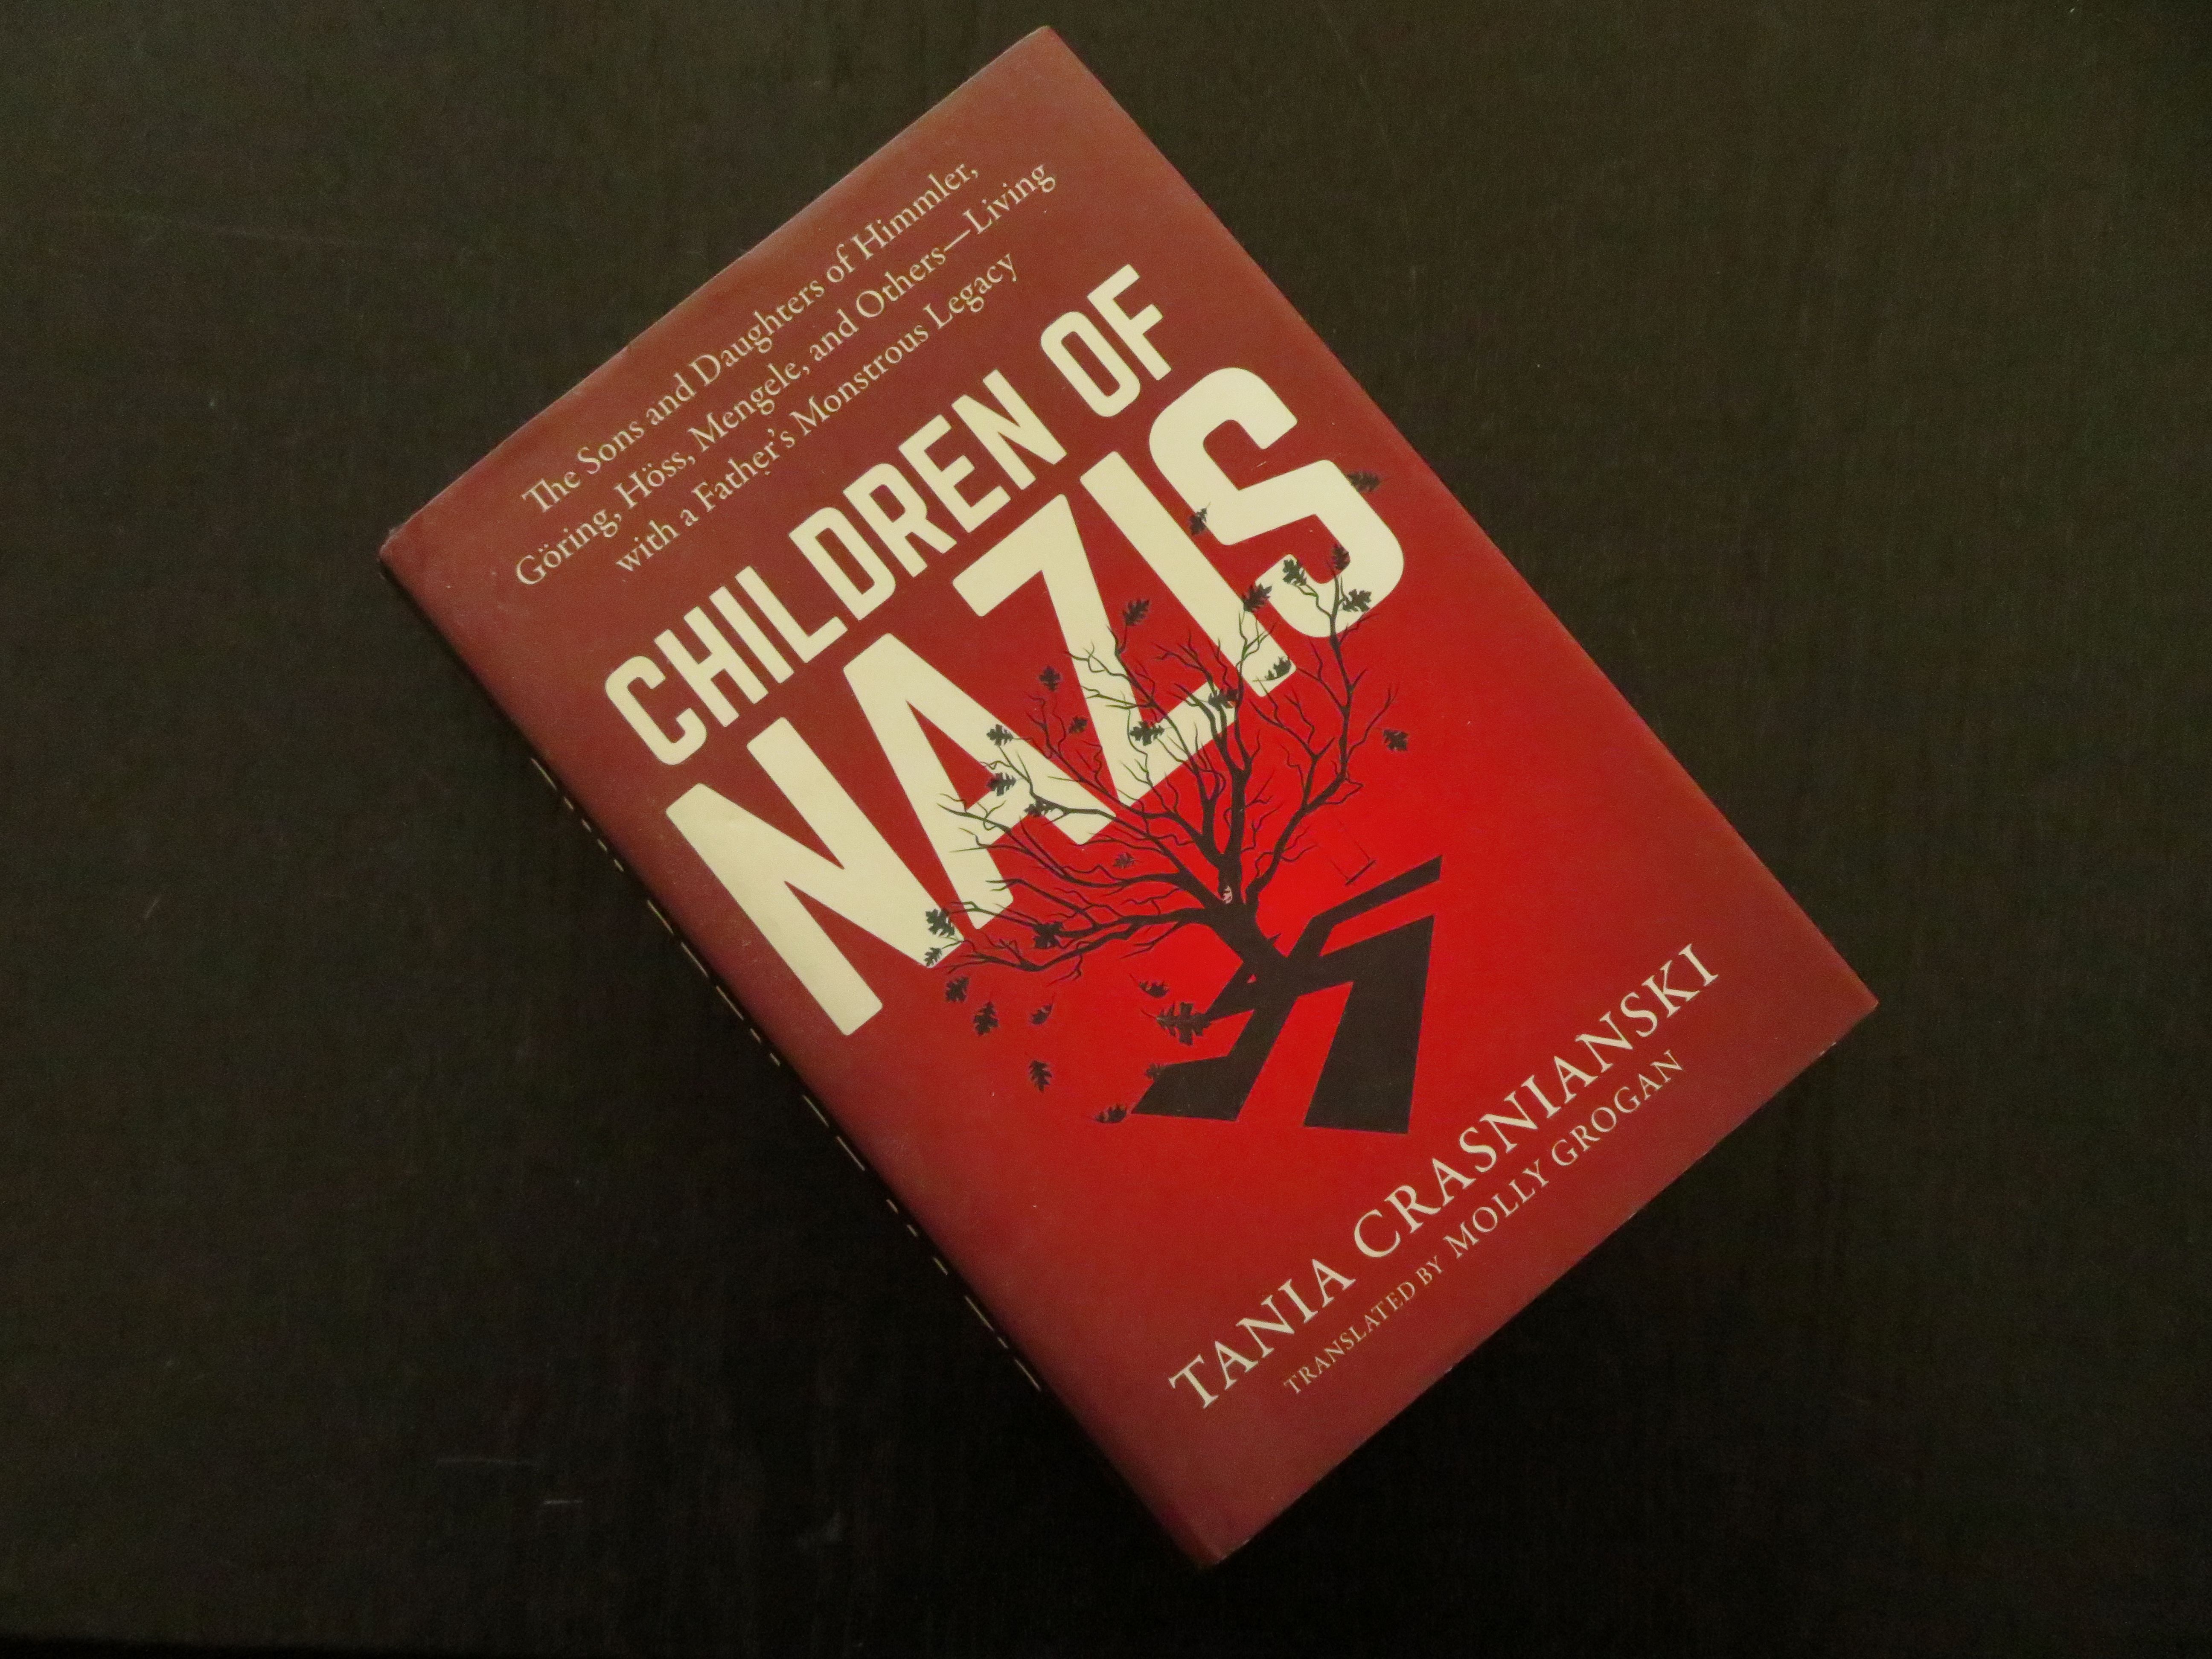 Tania Crasnianski: Children of Nazis